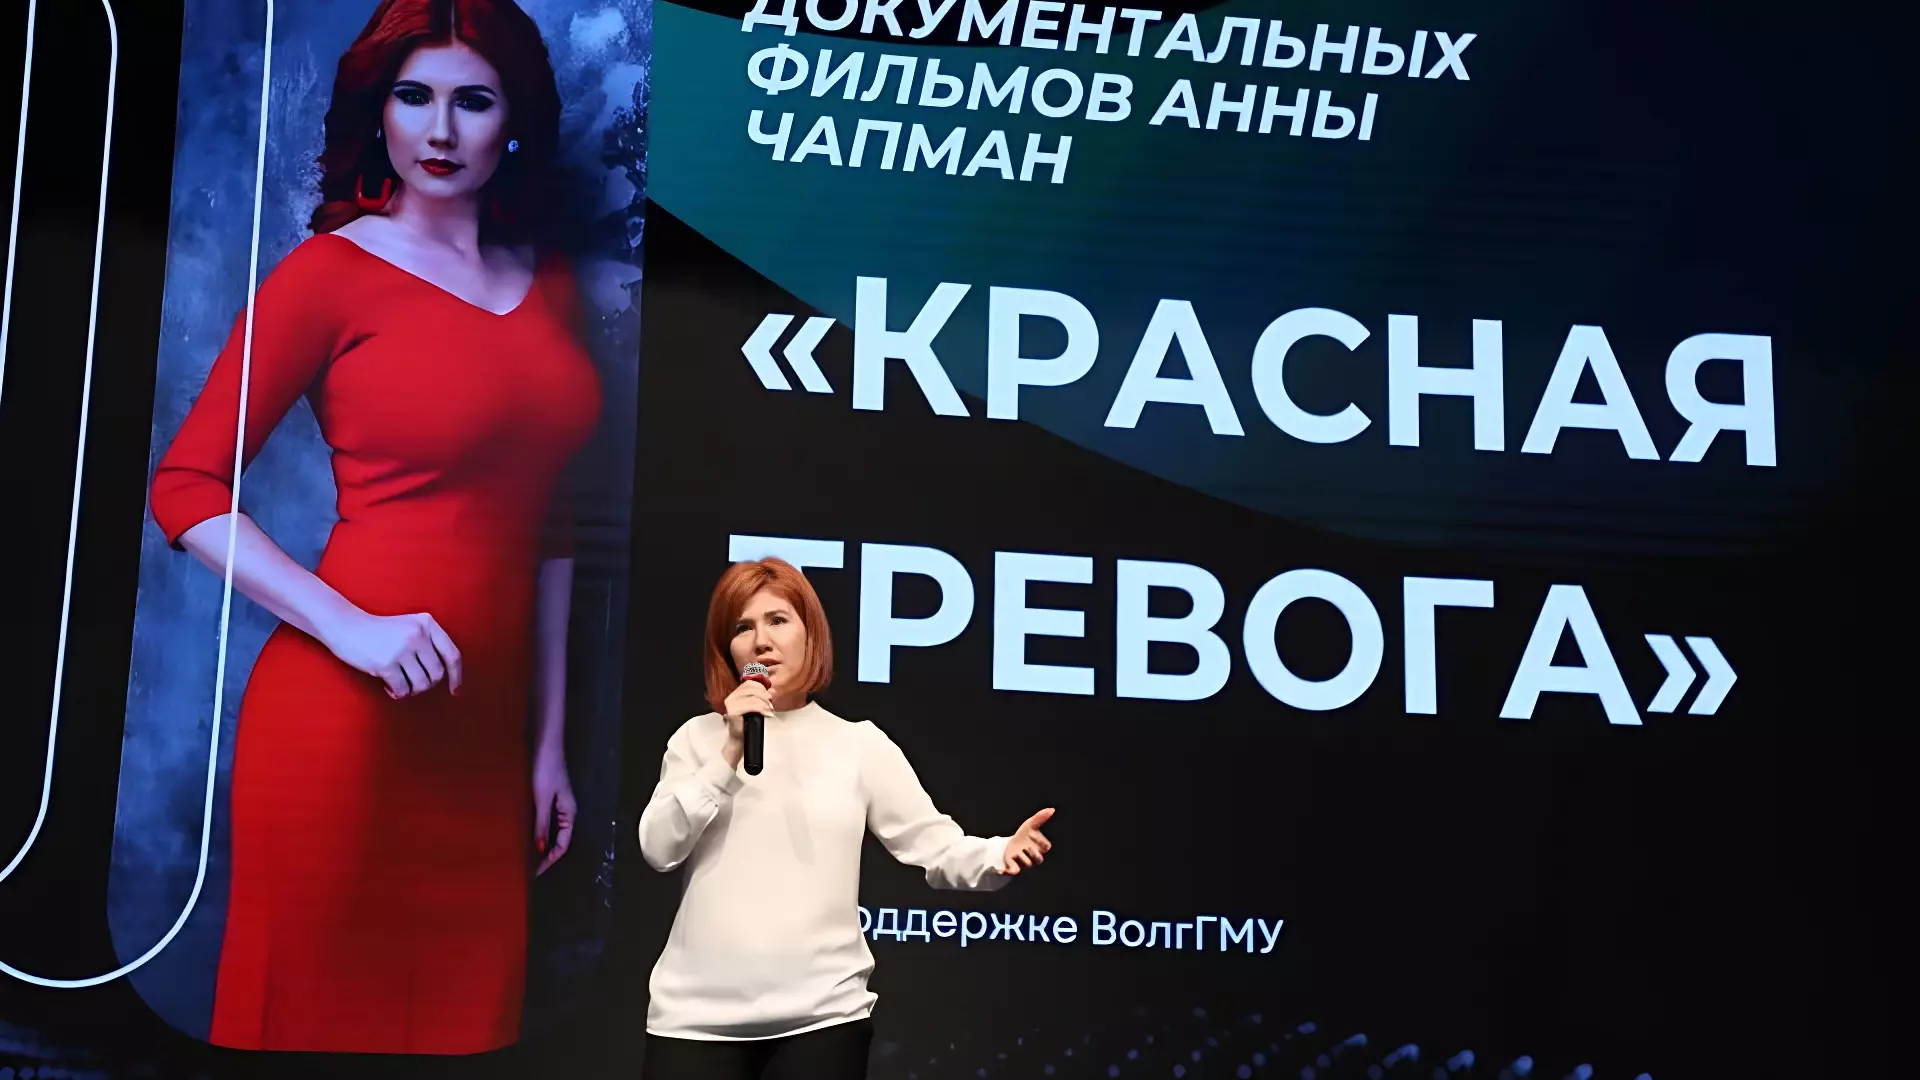 Бывшая шпионка Анна Чапман посетила Волгоград